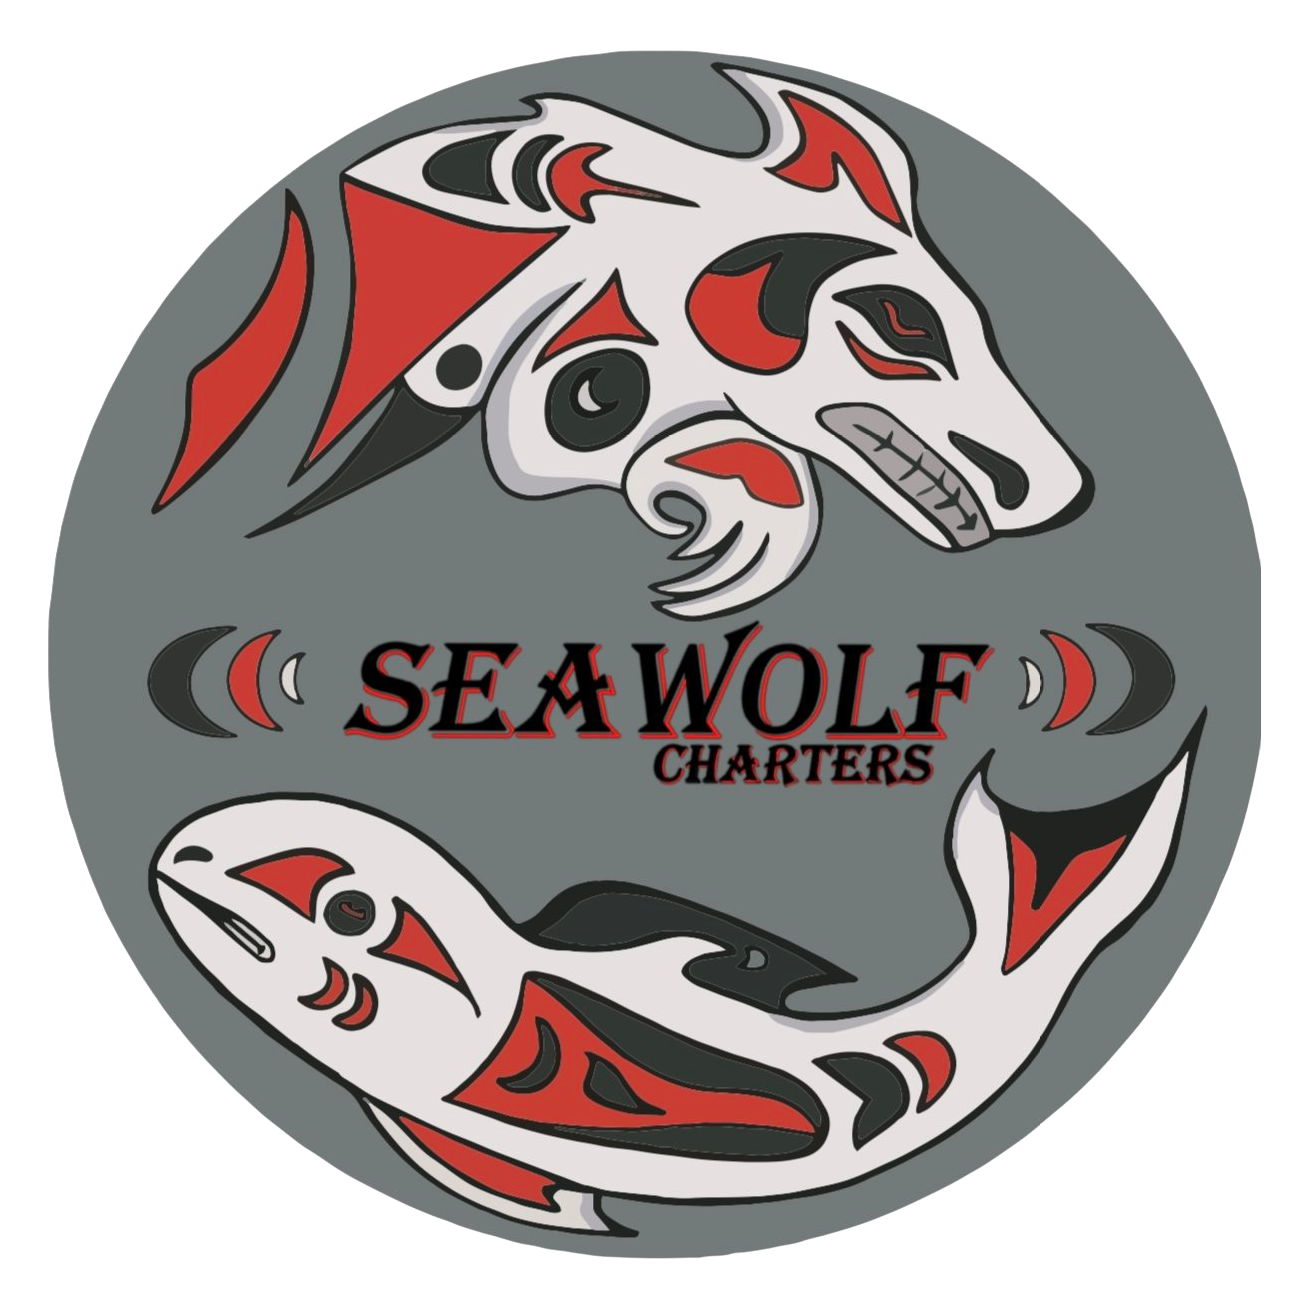 Seawolf Charters